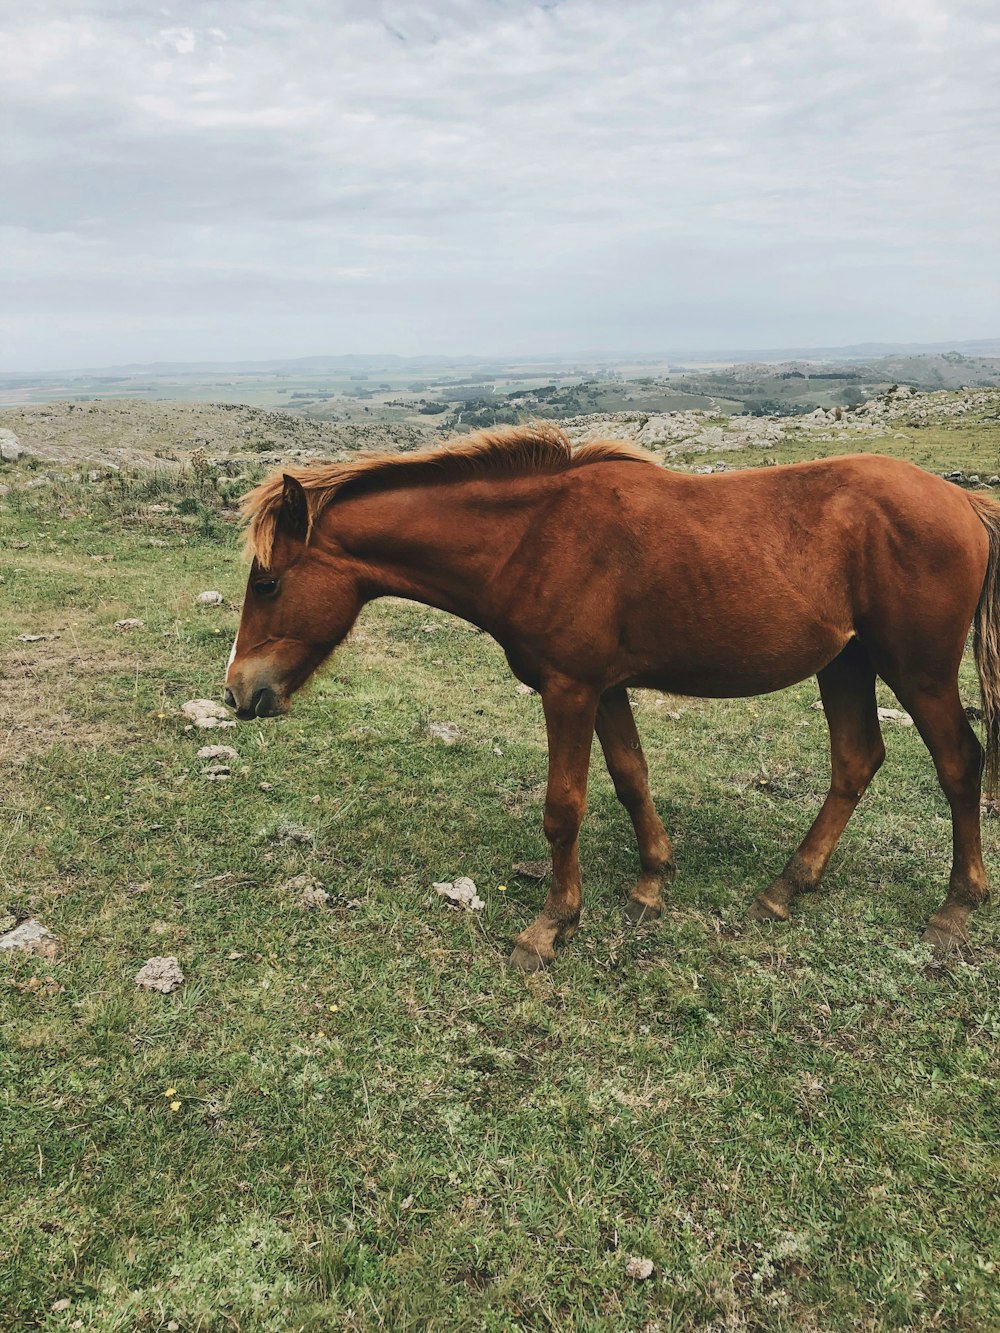 cavallo marrone su terreno roccioso grigio durante il giorno